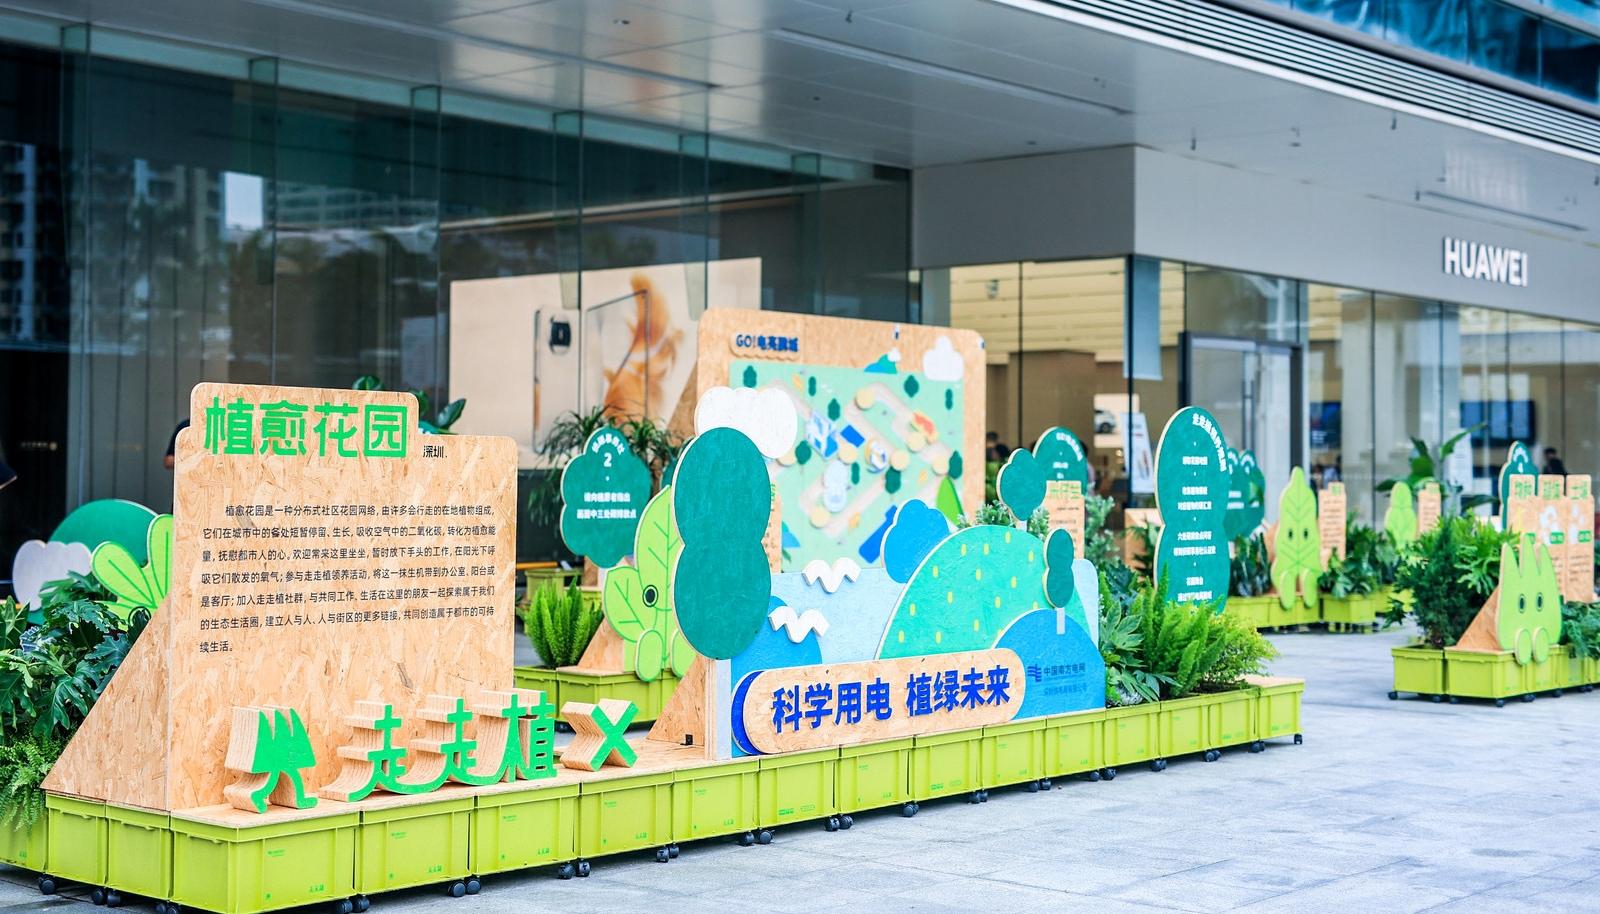 传递绿色低碳理念 南方电网深圳供电局举行“科学用电 植绿未来”活动